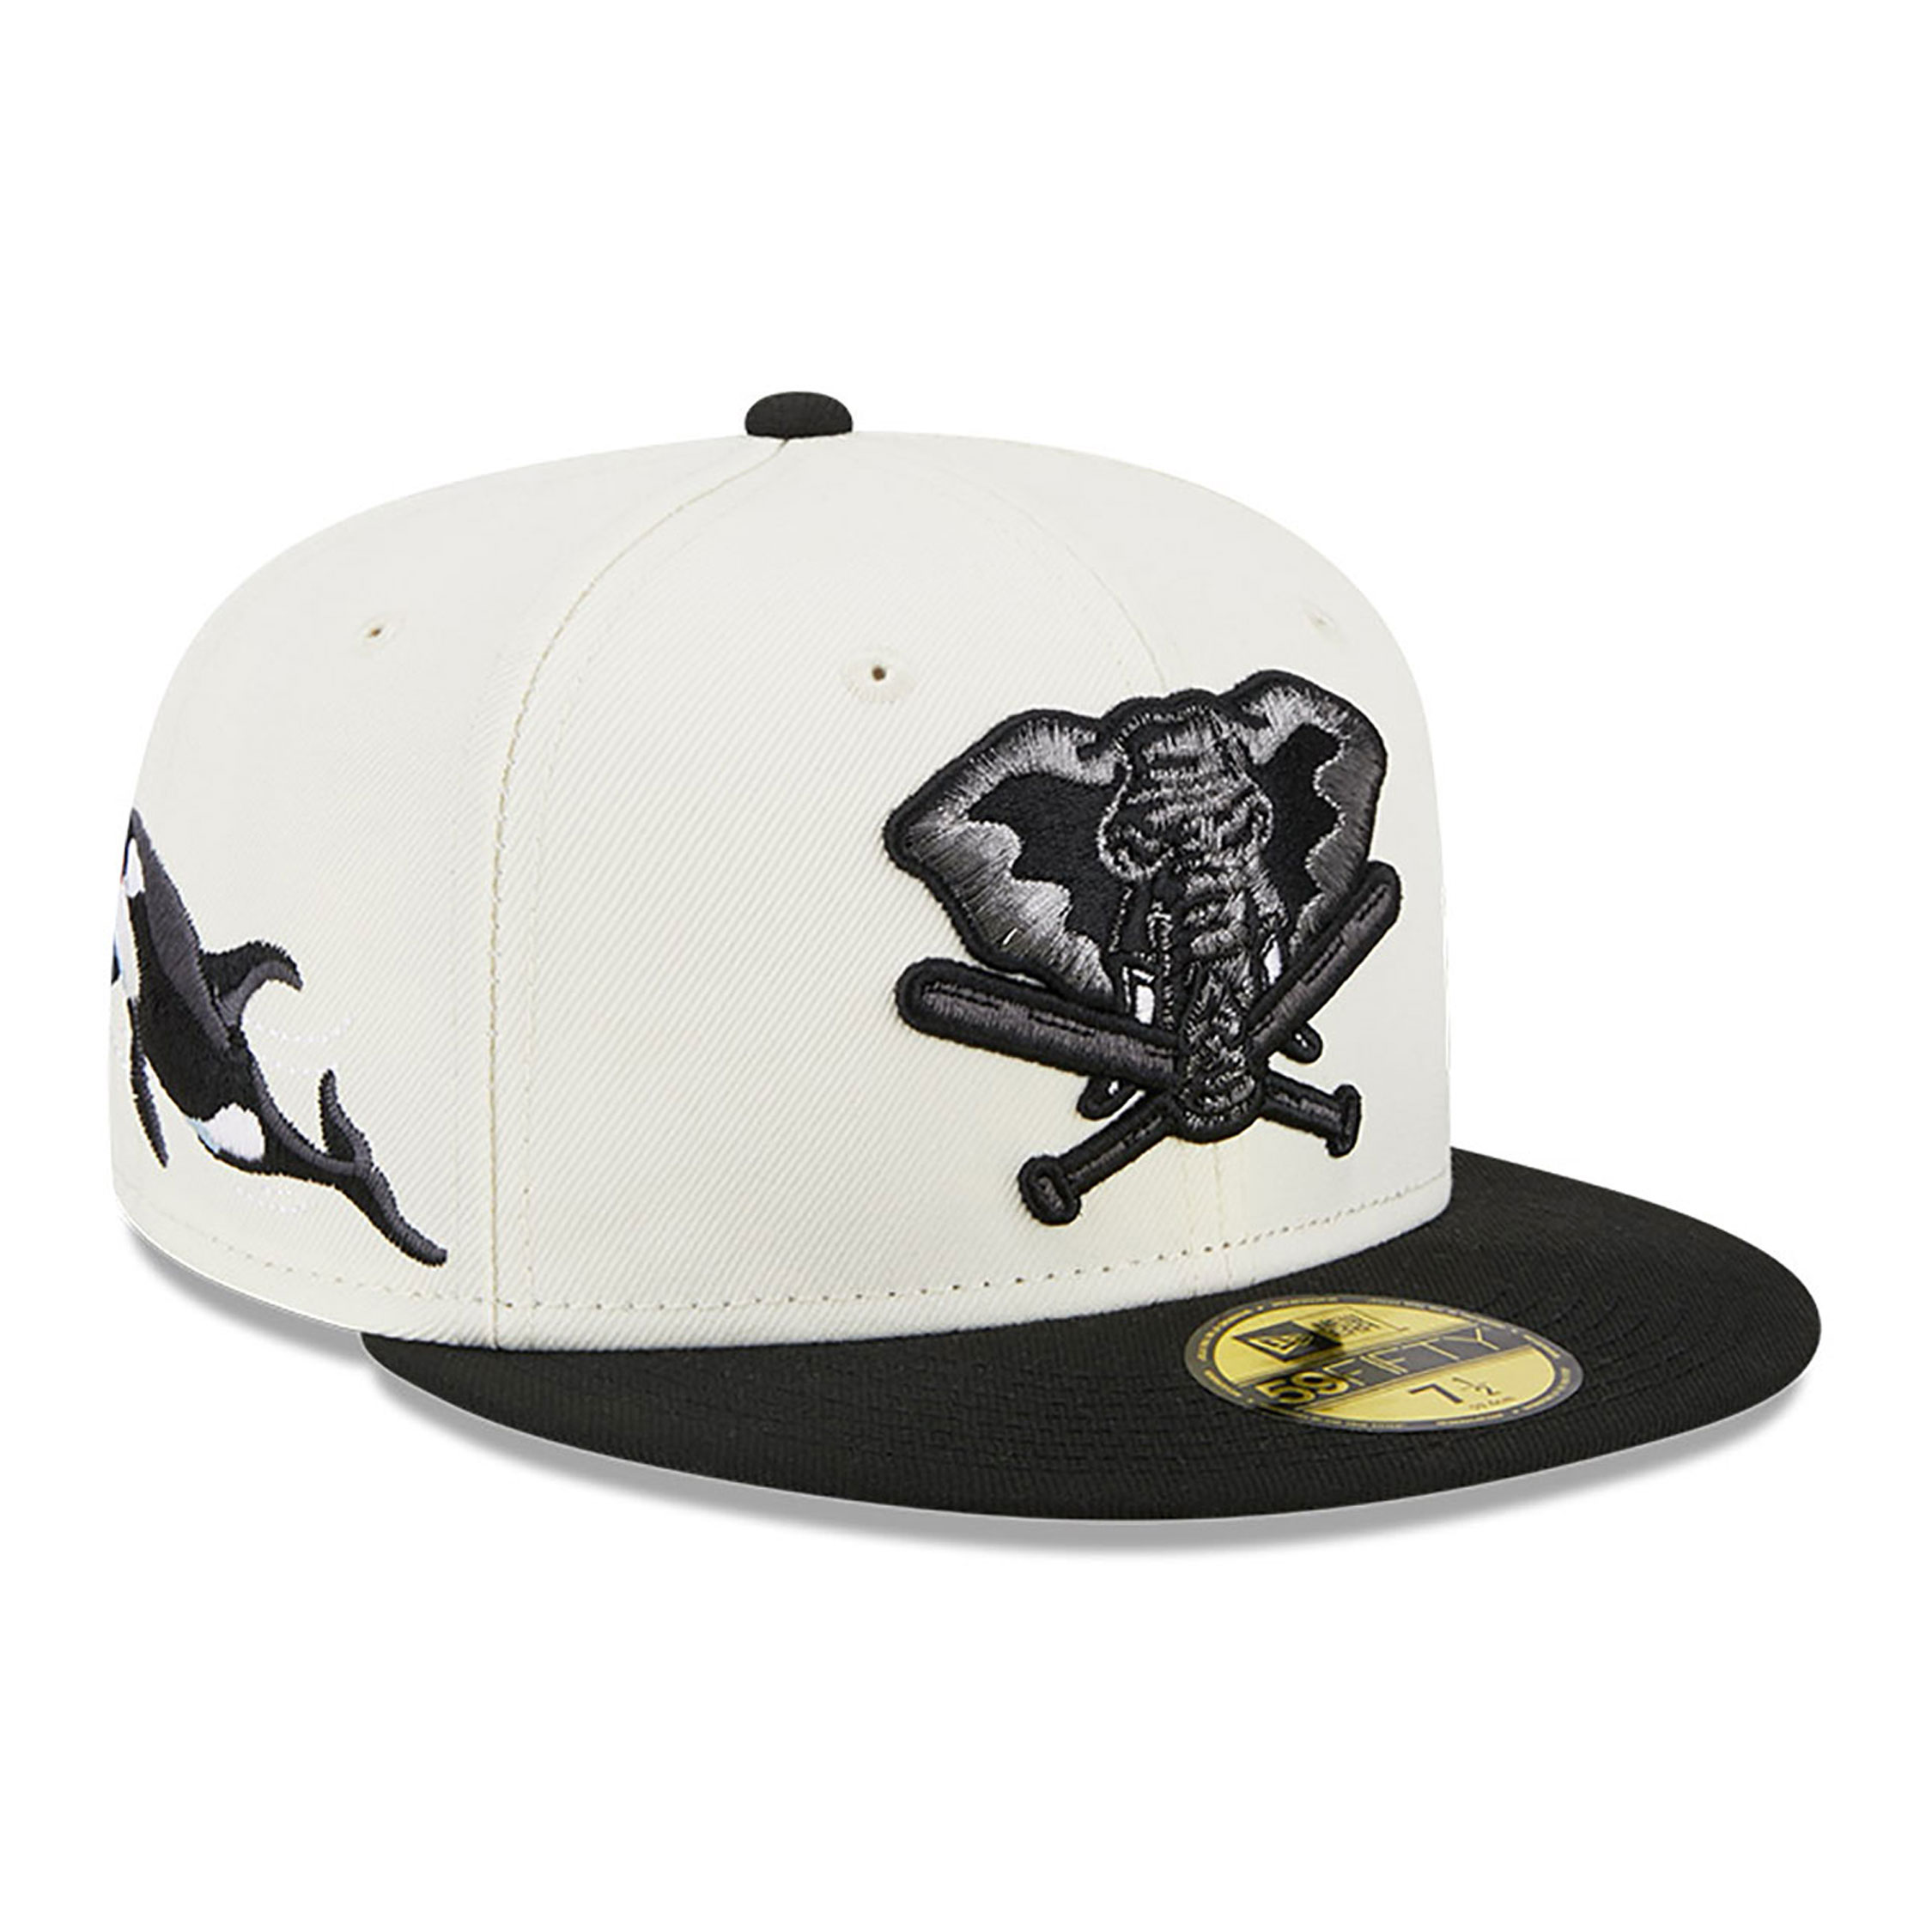 Oakland Athletics Caps, Hats & Clothing | Oakland A's | New Era Cap UK